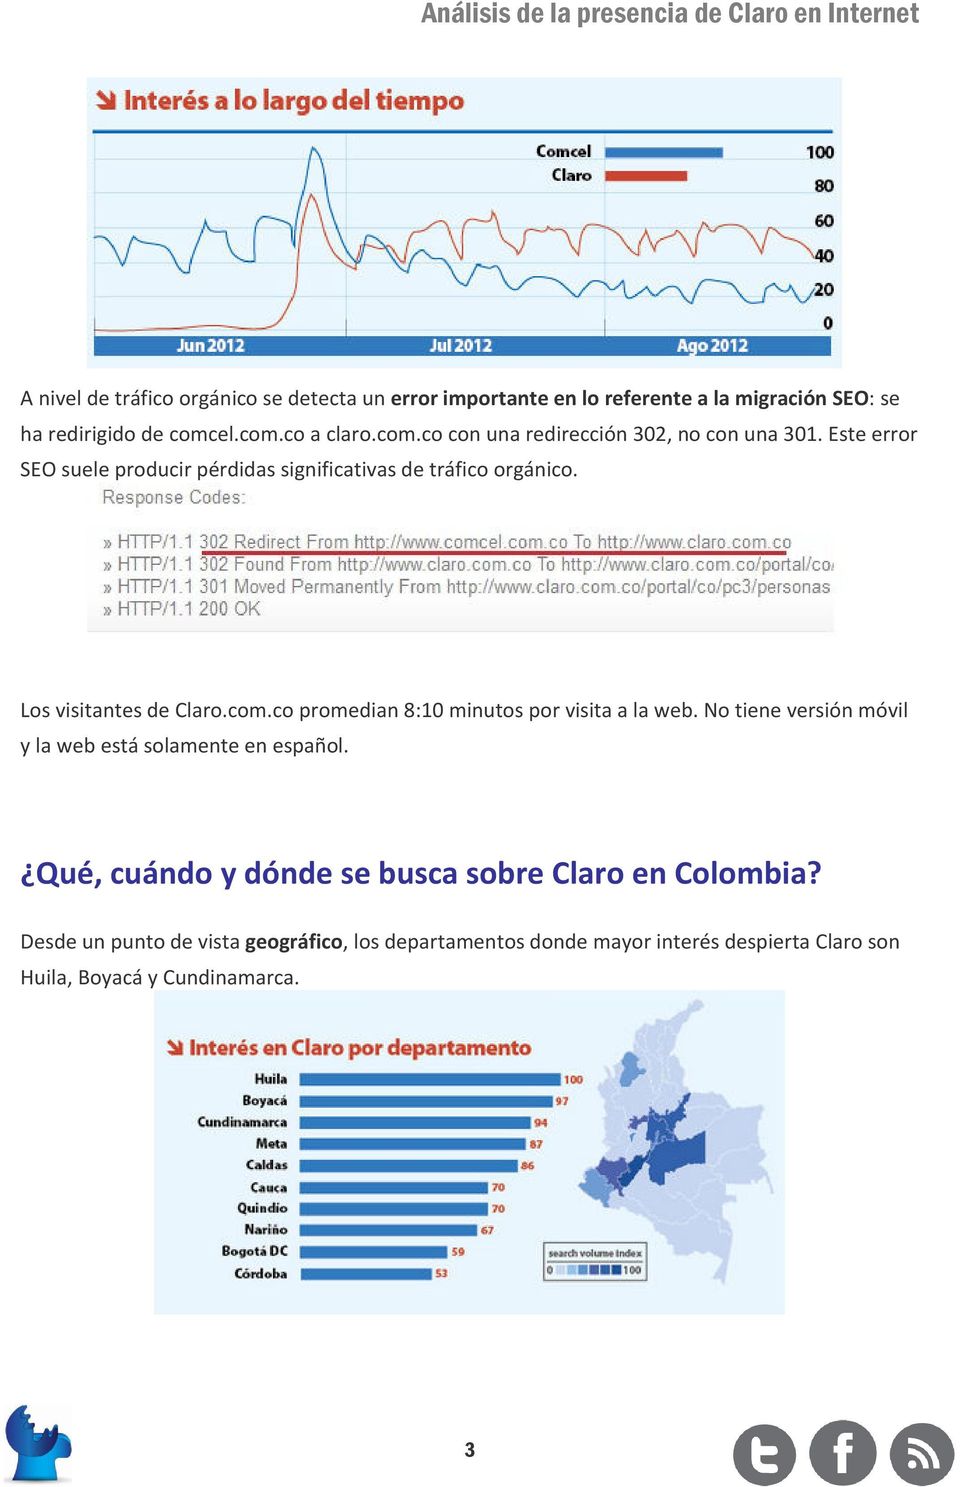 Los visitantes de Claro.com.co promedian 8:10 minutos por visita a la web. No tiene versión móvil y la web está solamente en español.